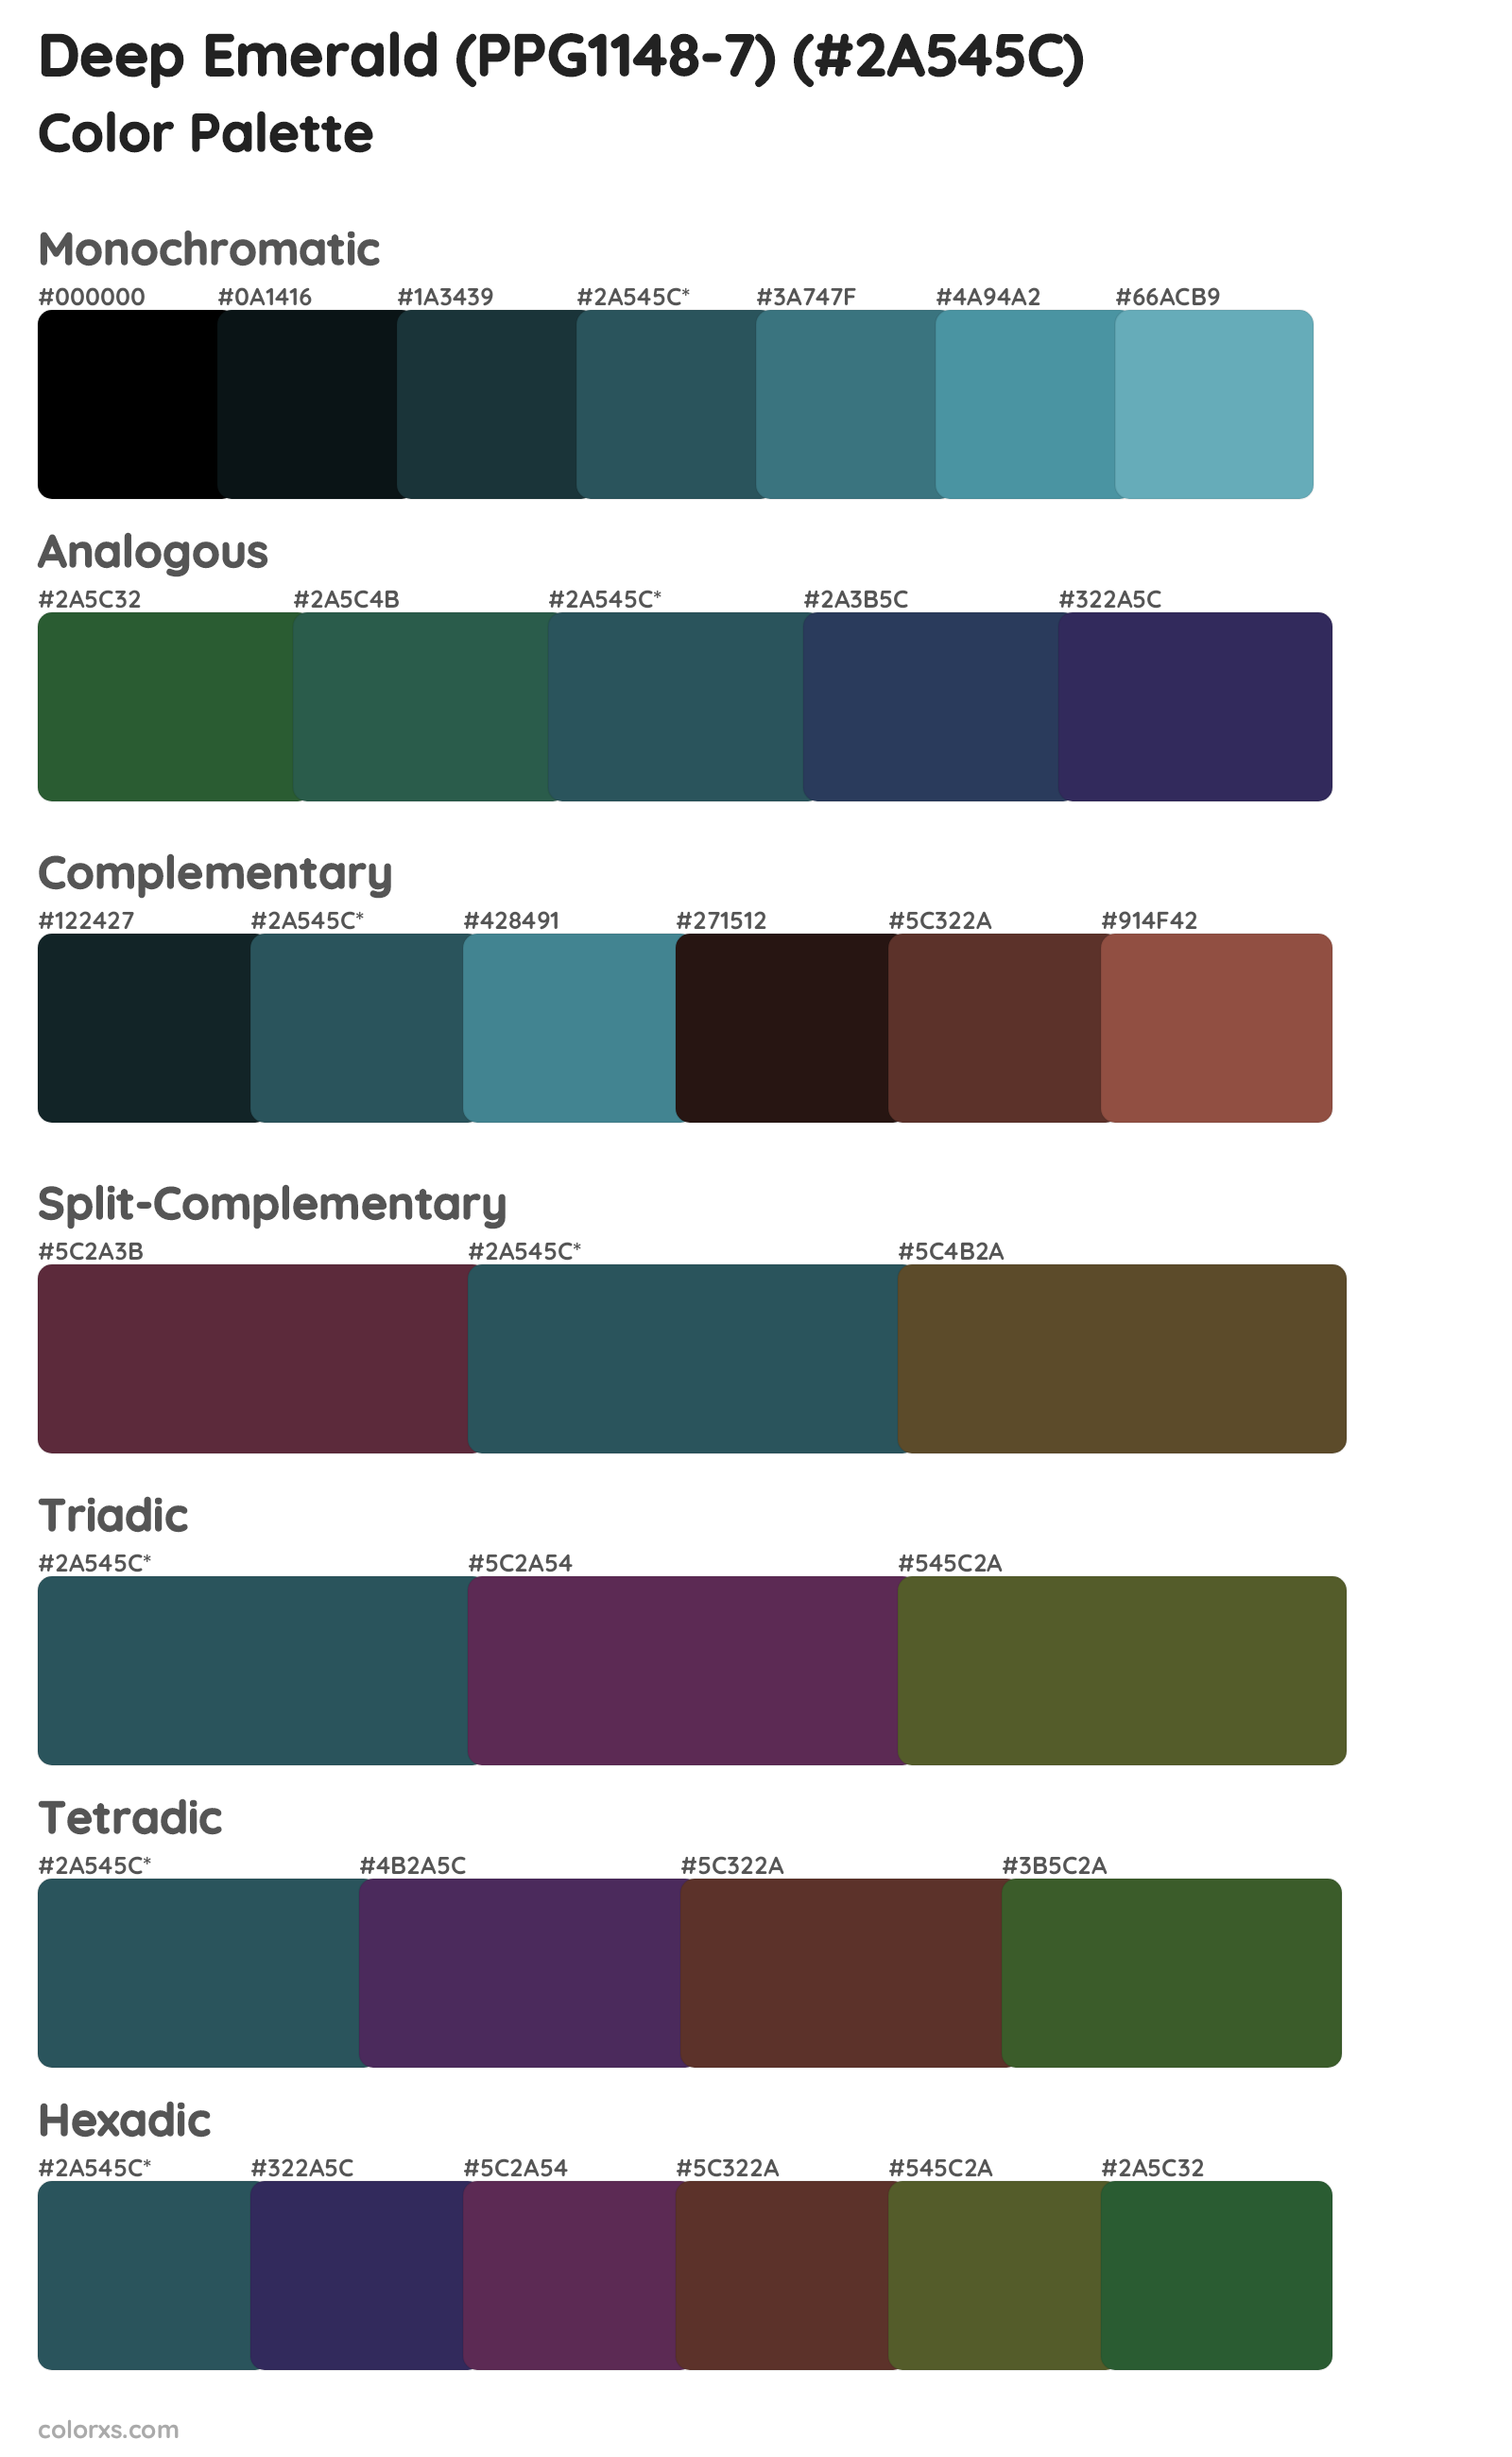 Deep Emerald (PPG1148-7) Color Scheme Palettes